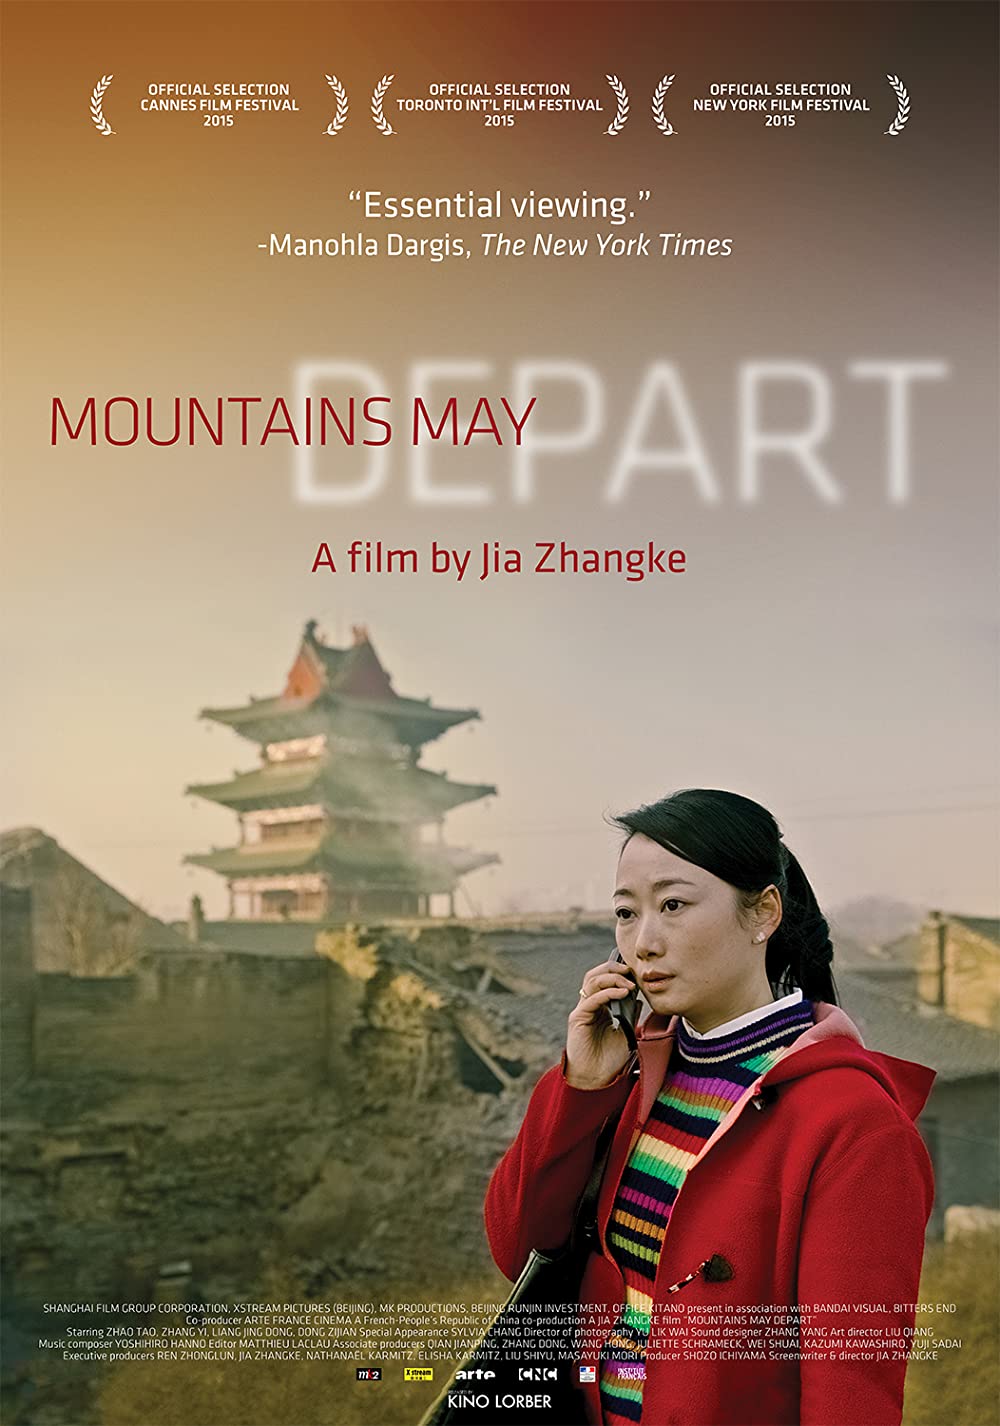 Filmbeschreibung zu Mountains May Depart (OV)